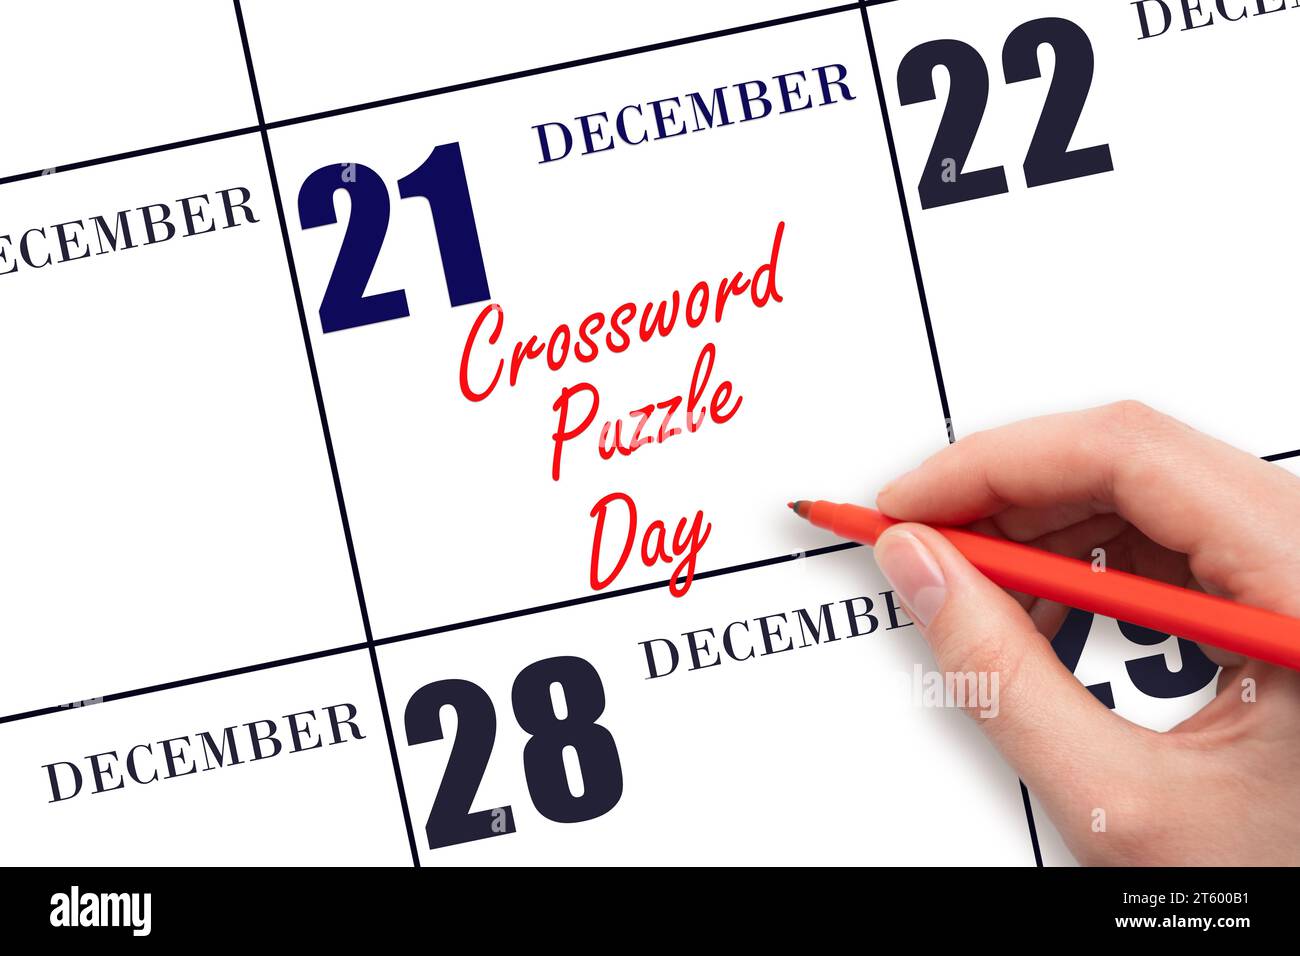 Décembre 21. Texte d'écriture à la main Crossword Puzzle Day à la date du calendrier. Enregistrez la date. Vacances. Concept du jour de l'année. Banque D'Images